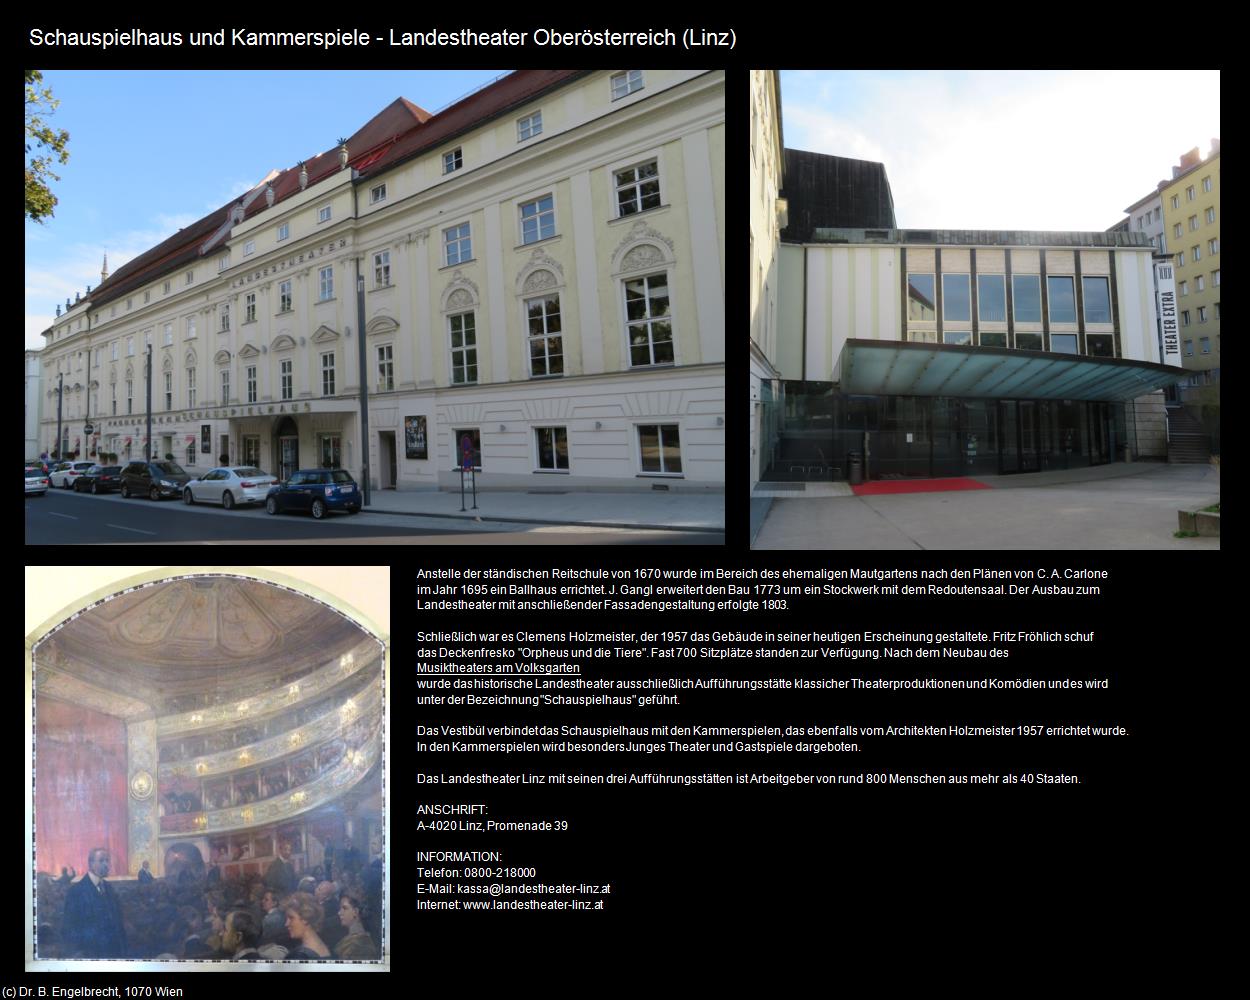 Schauspielhaus u. Kammerspiele-Landestheater OÖ (Linz) in Kulturatlas-OBERÖSTERREICH(c)B.Engelbrecht